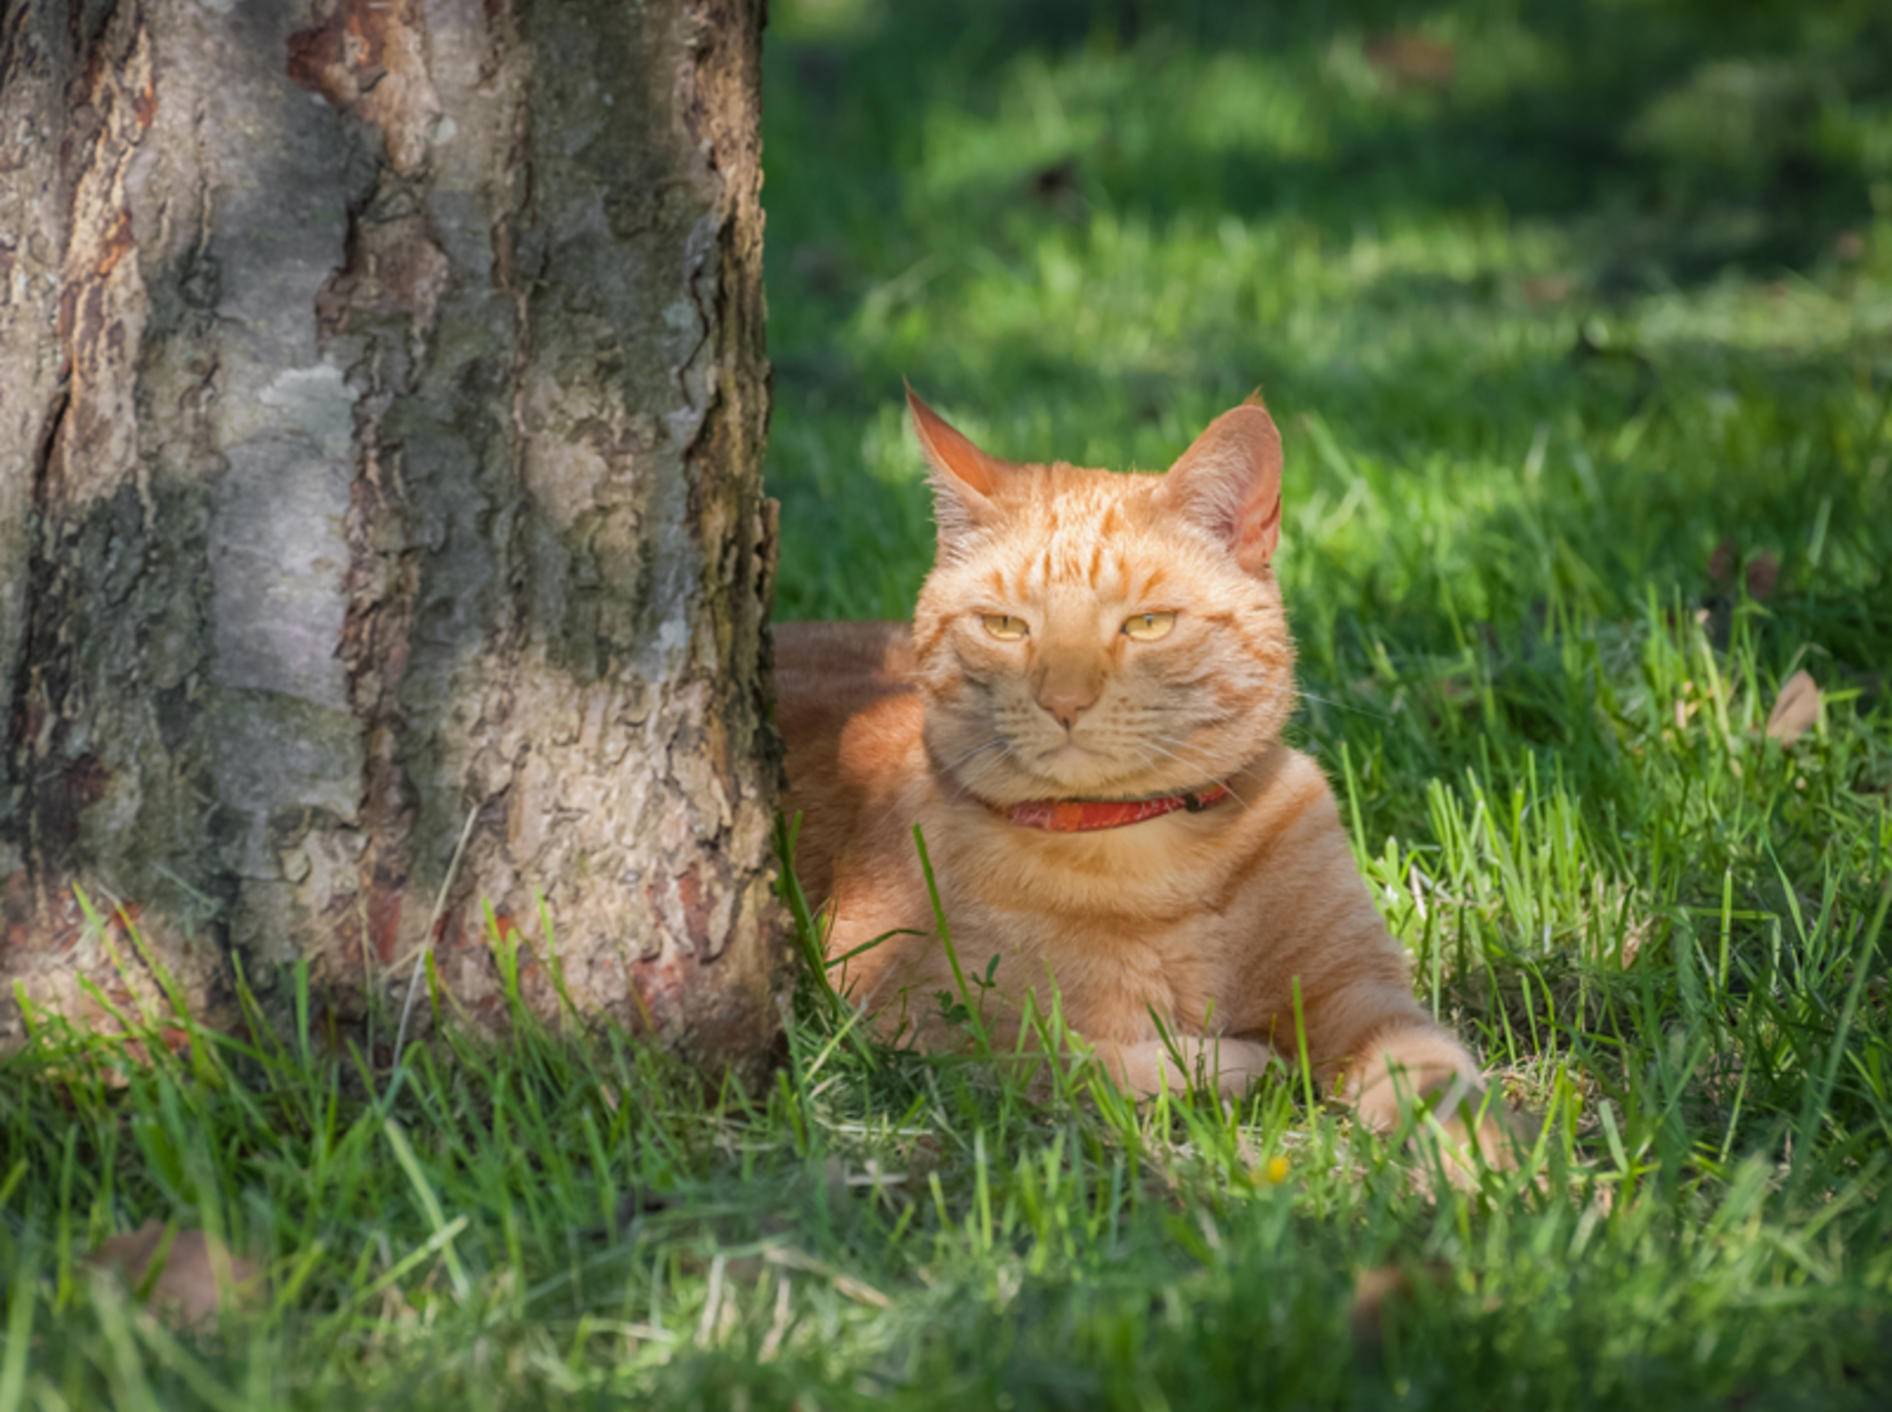 Sonne ist schön, Schatten aber auch, findet die hübsche rote Katze – Shutterstock / Steve Mann